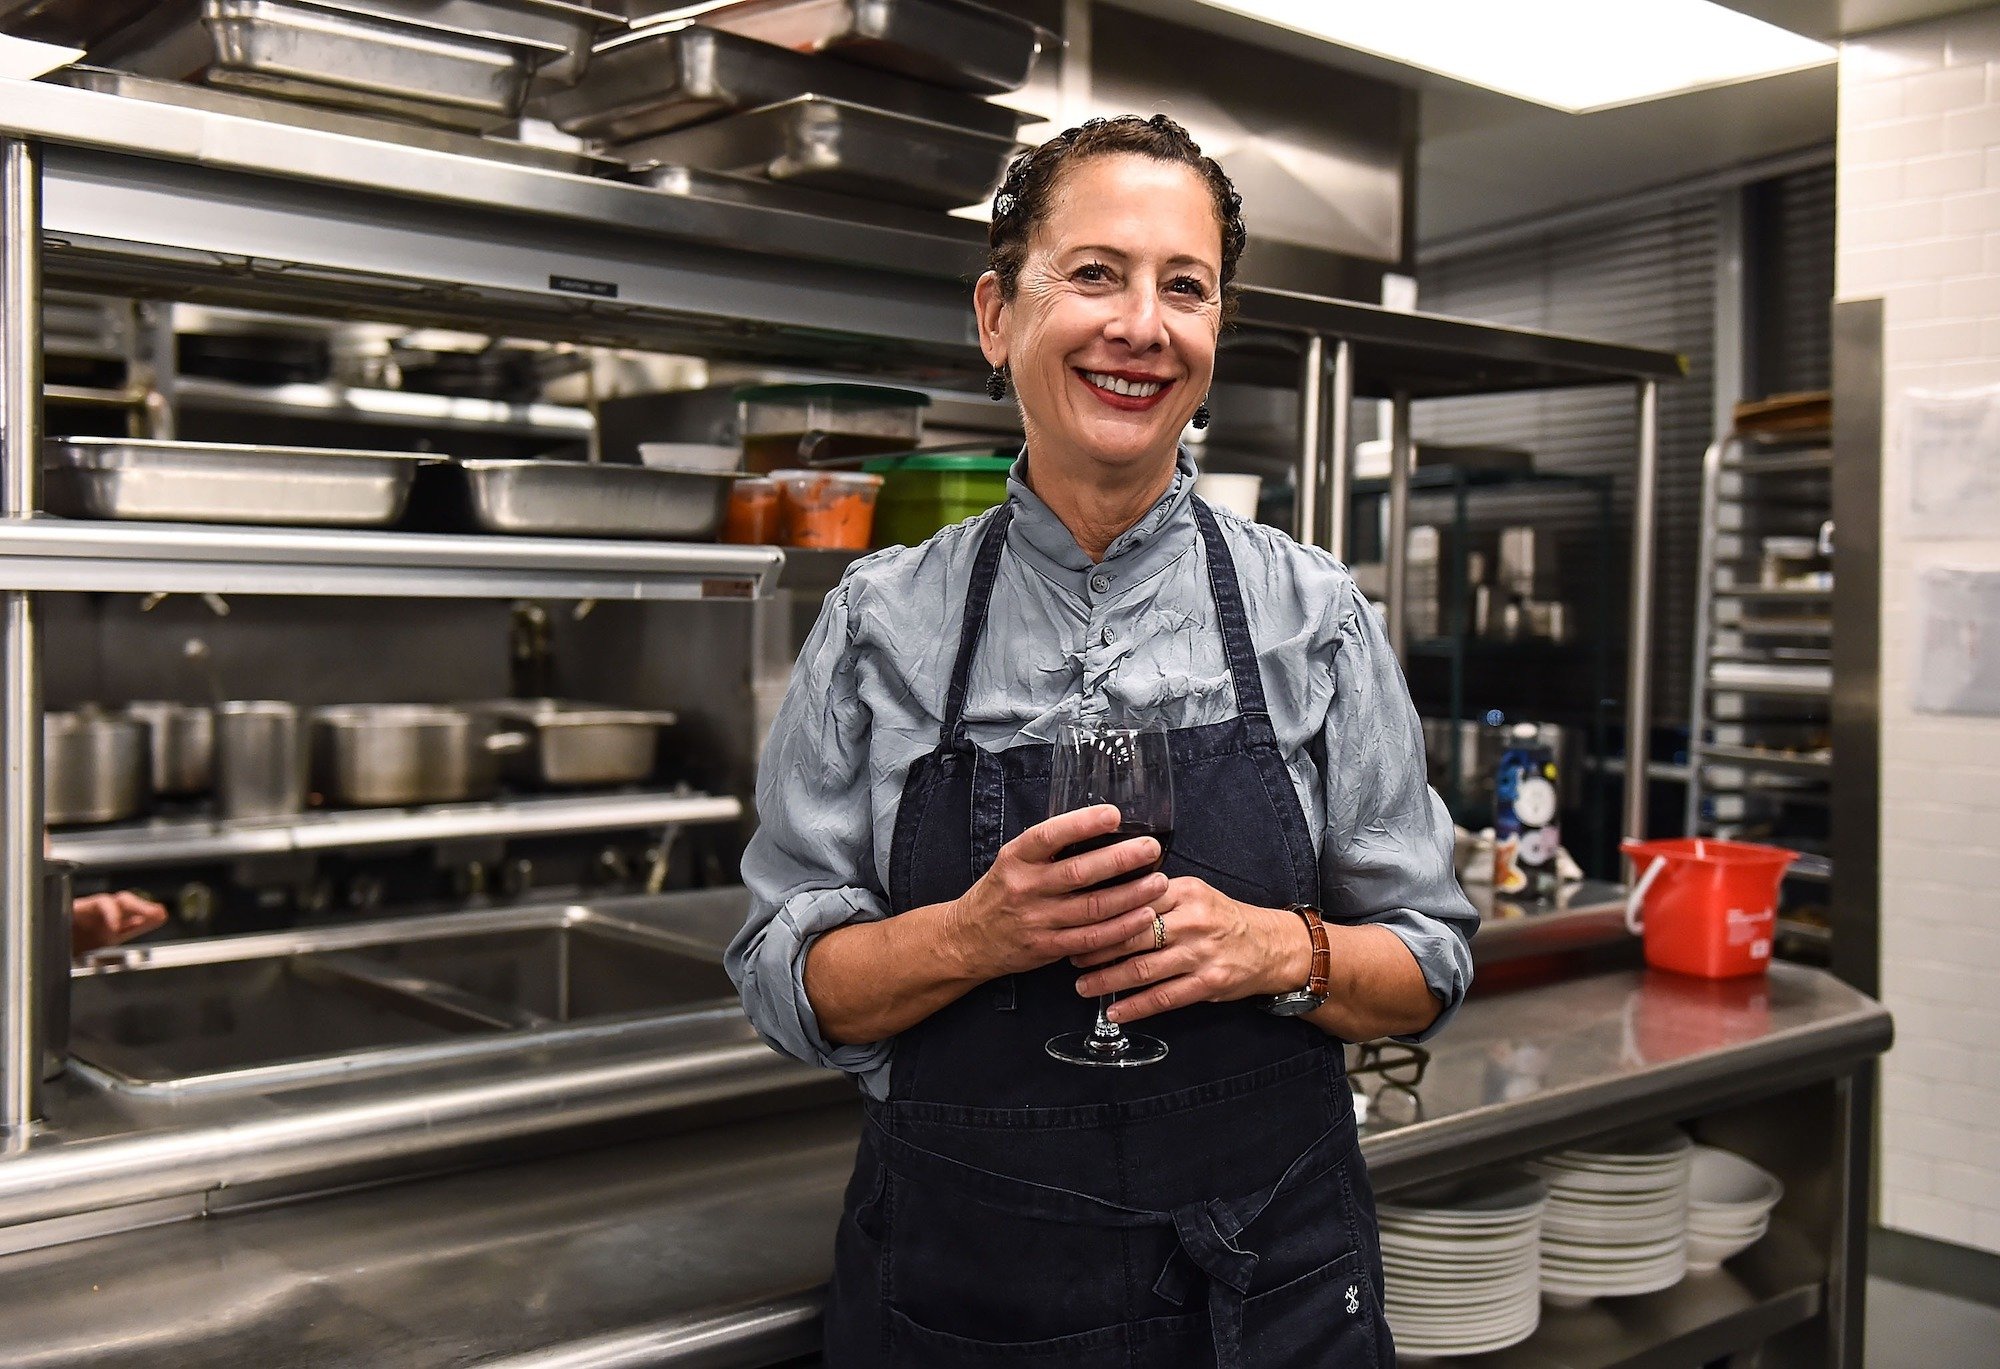 Nancy Silverton smiling, standing in a restaurant kitchen